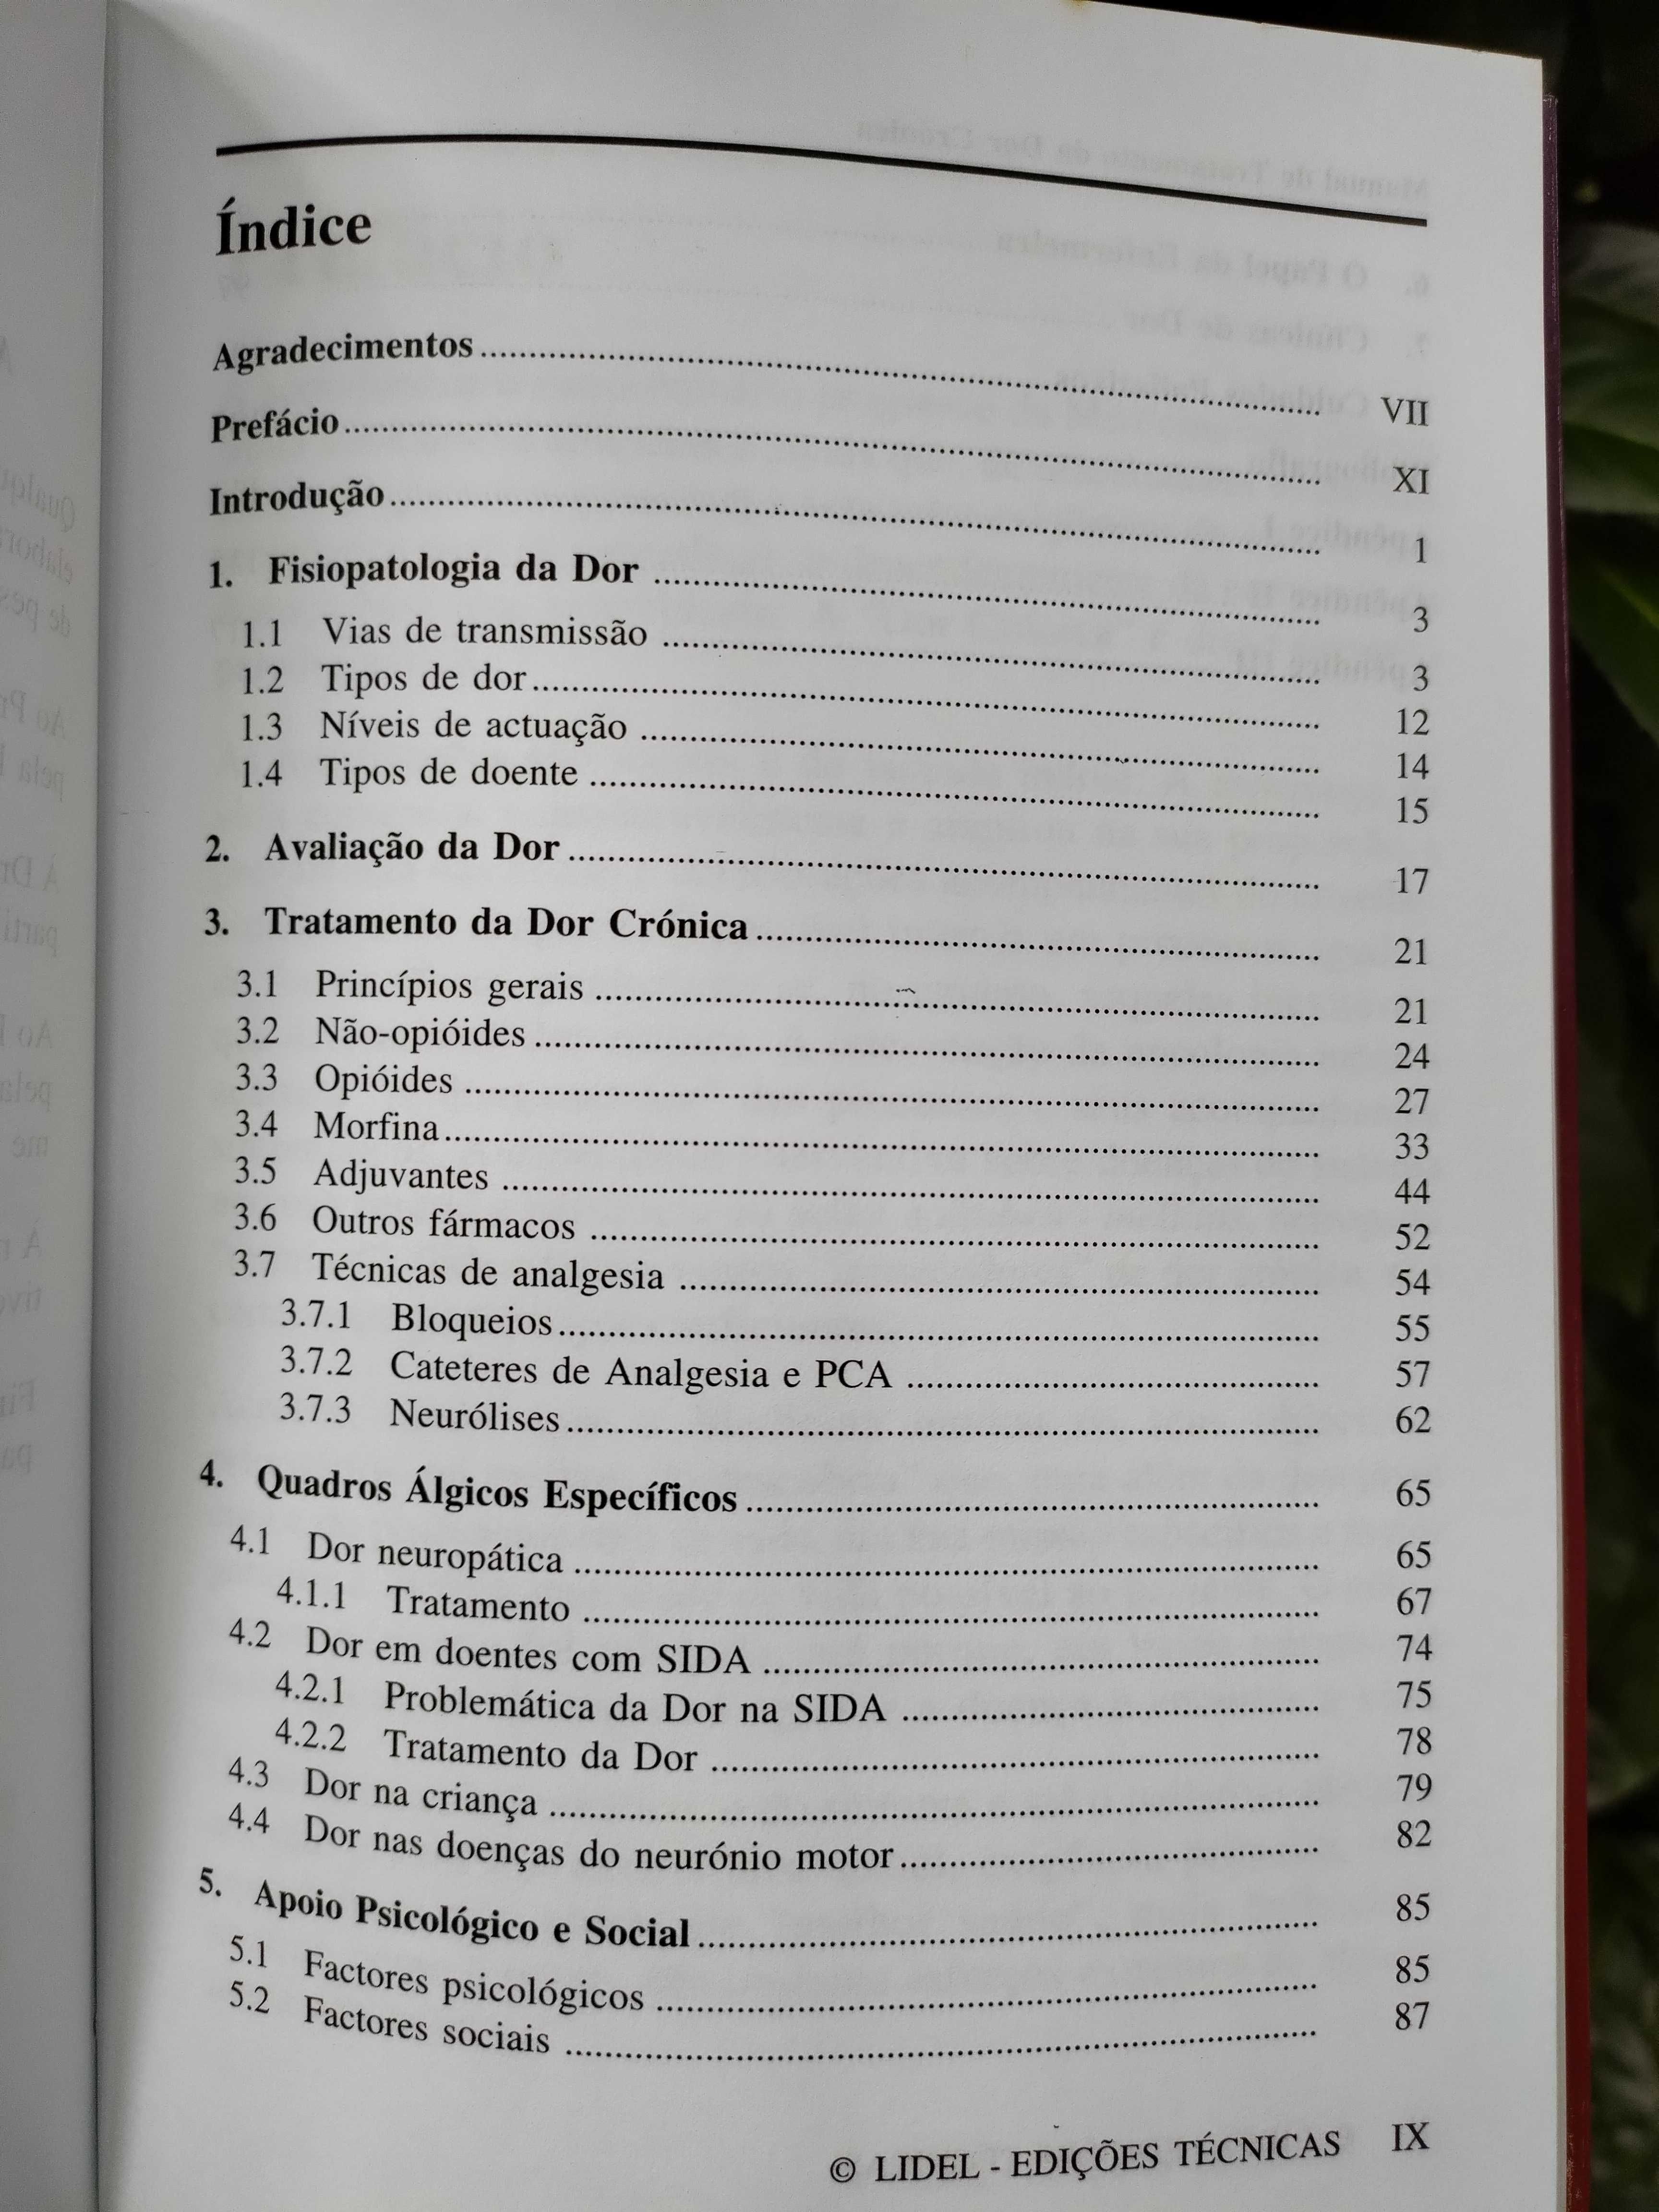 Manual de Tratamento da Dor Crónica (Alice Cardoso)